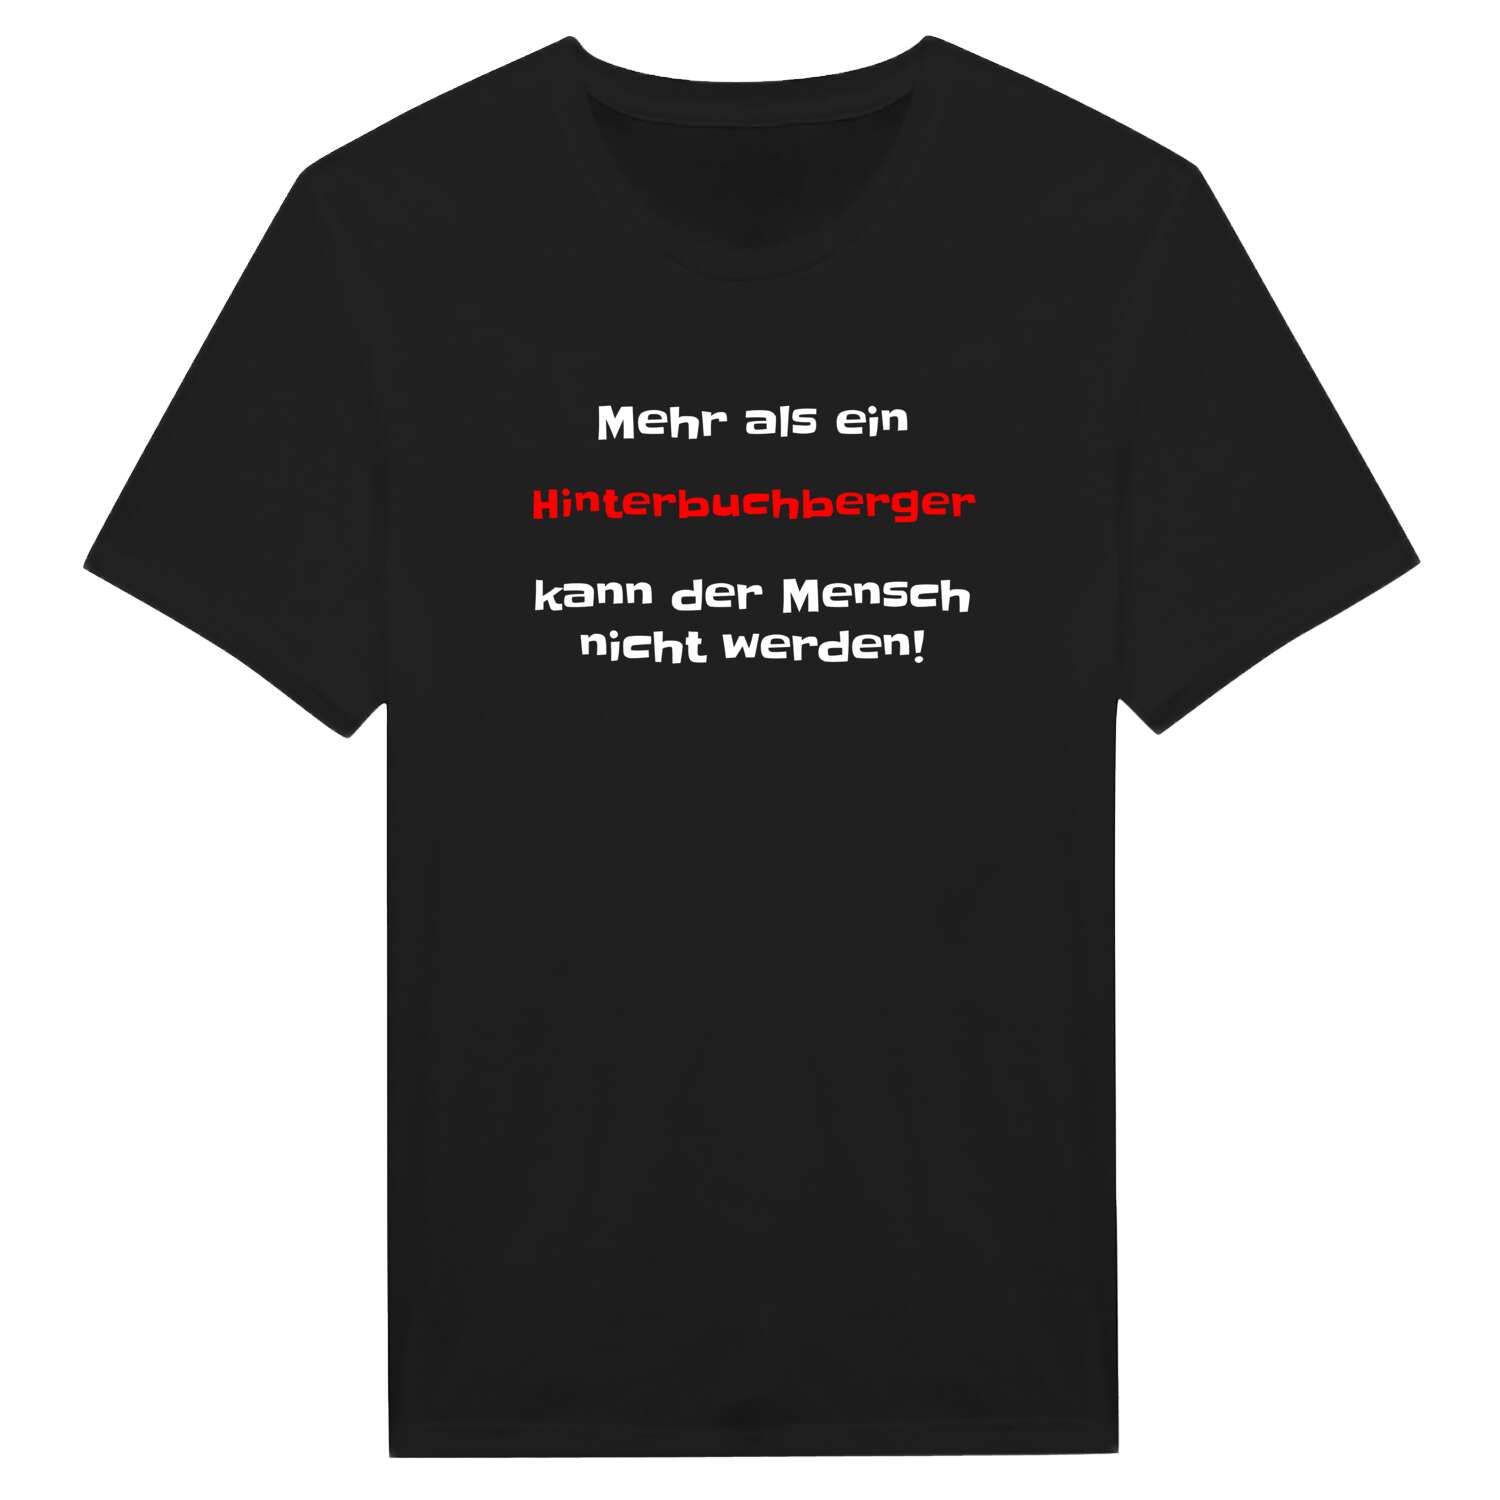 Hinterbuchberg T-Shirt »Mehr als ein«